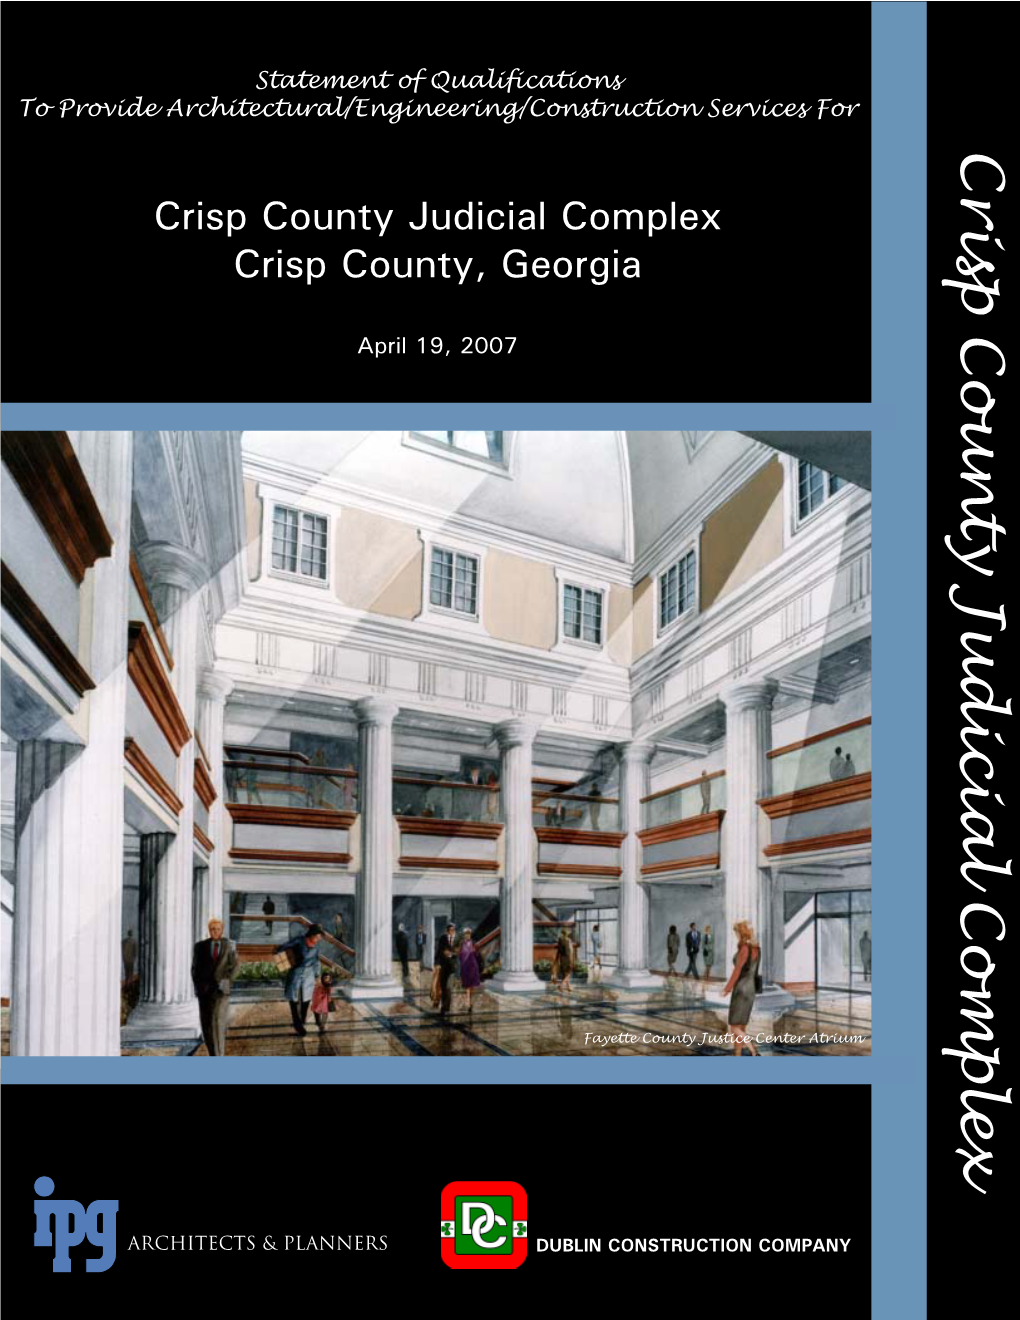 Crisp County Judicial Complex